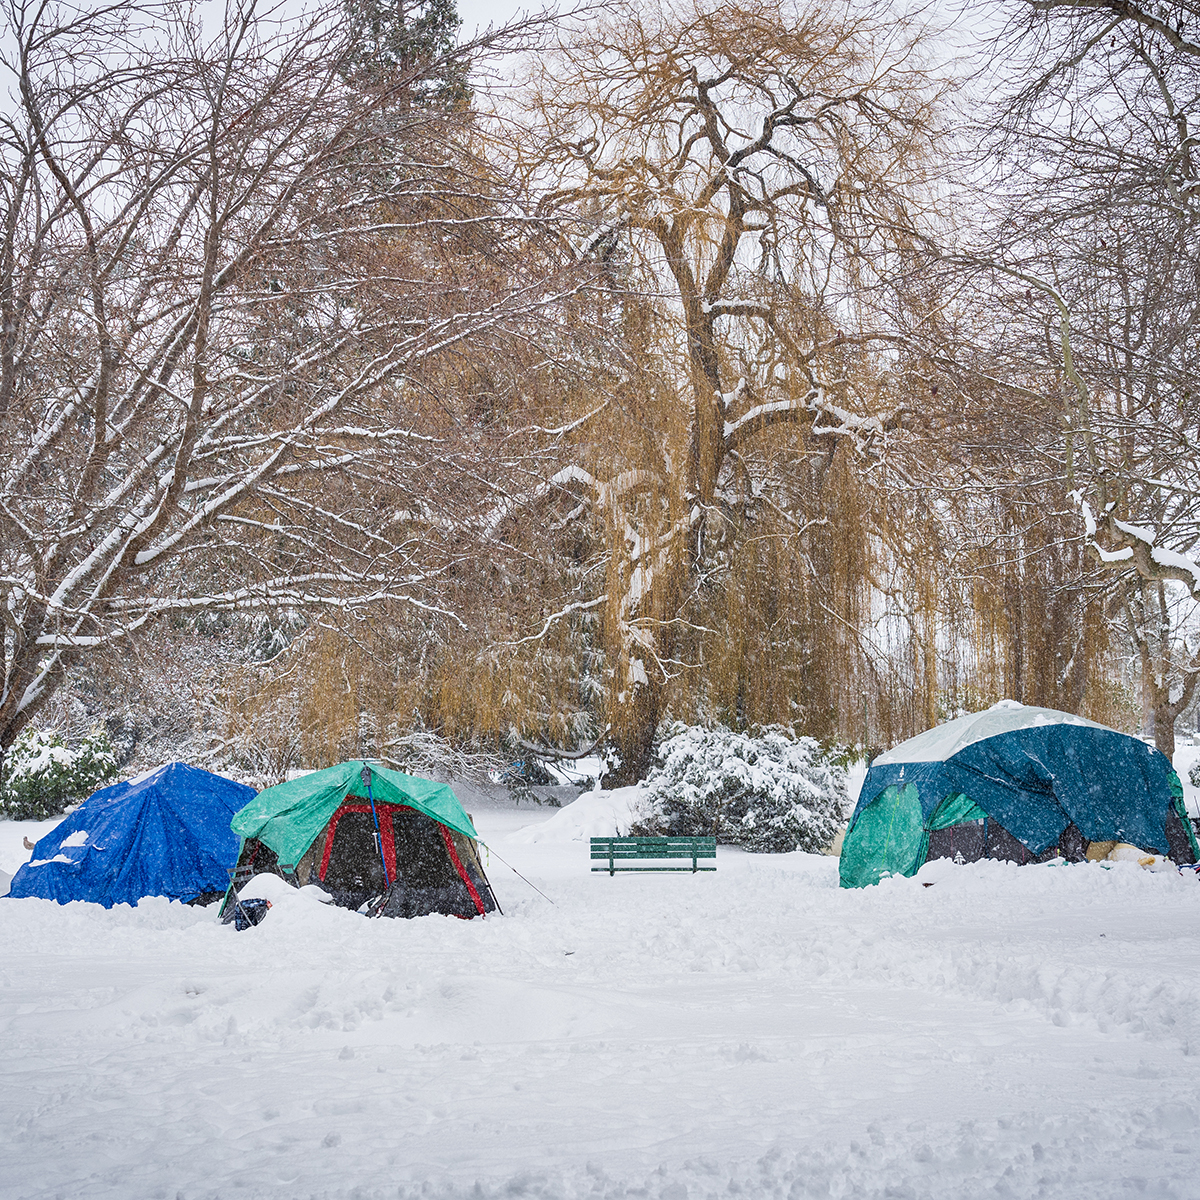 Encampments in winter